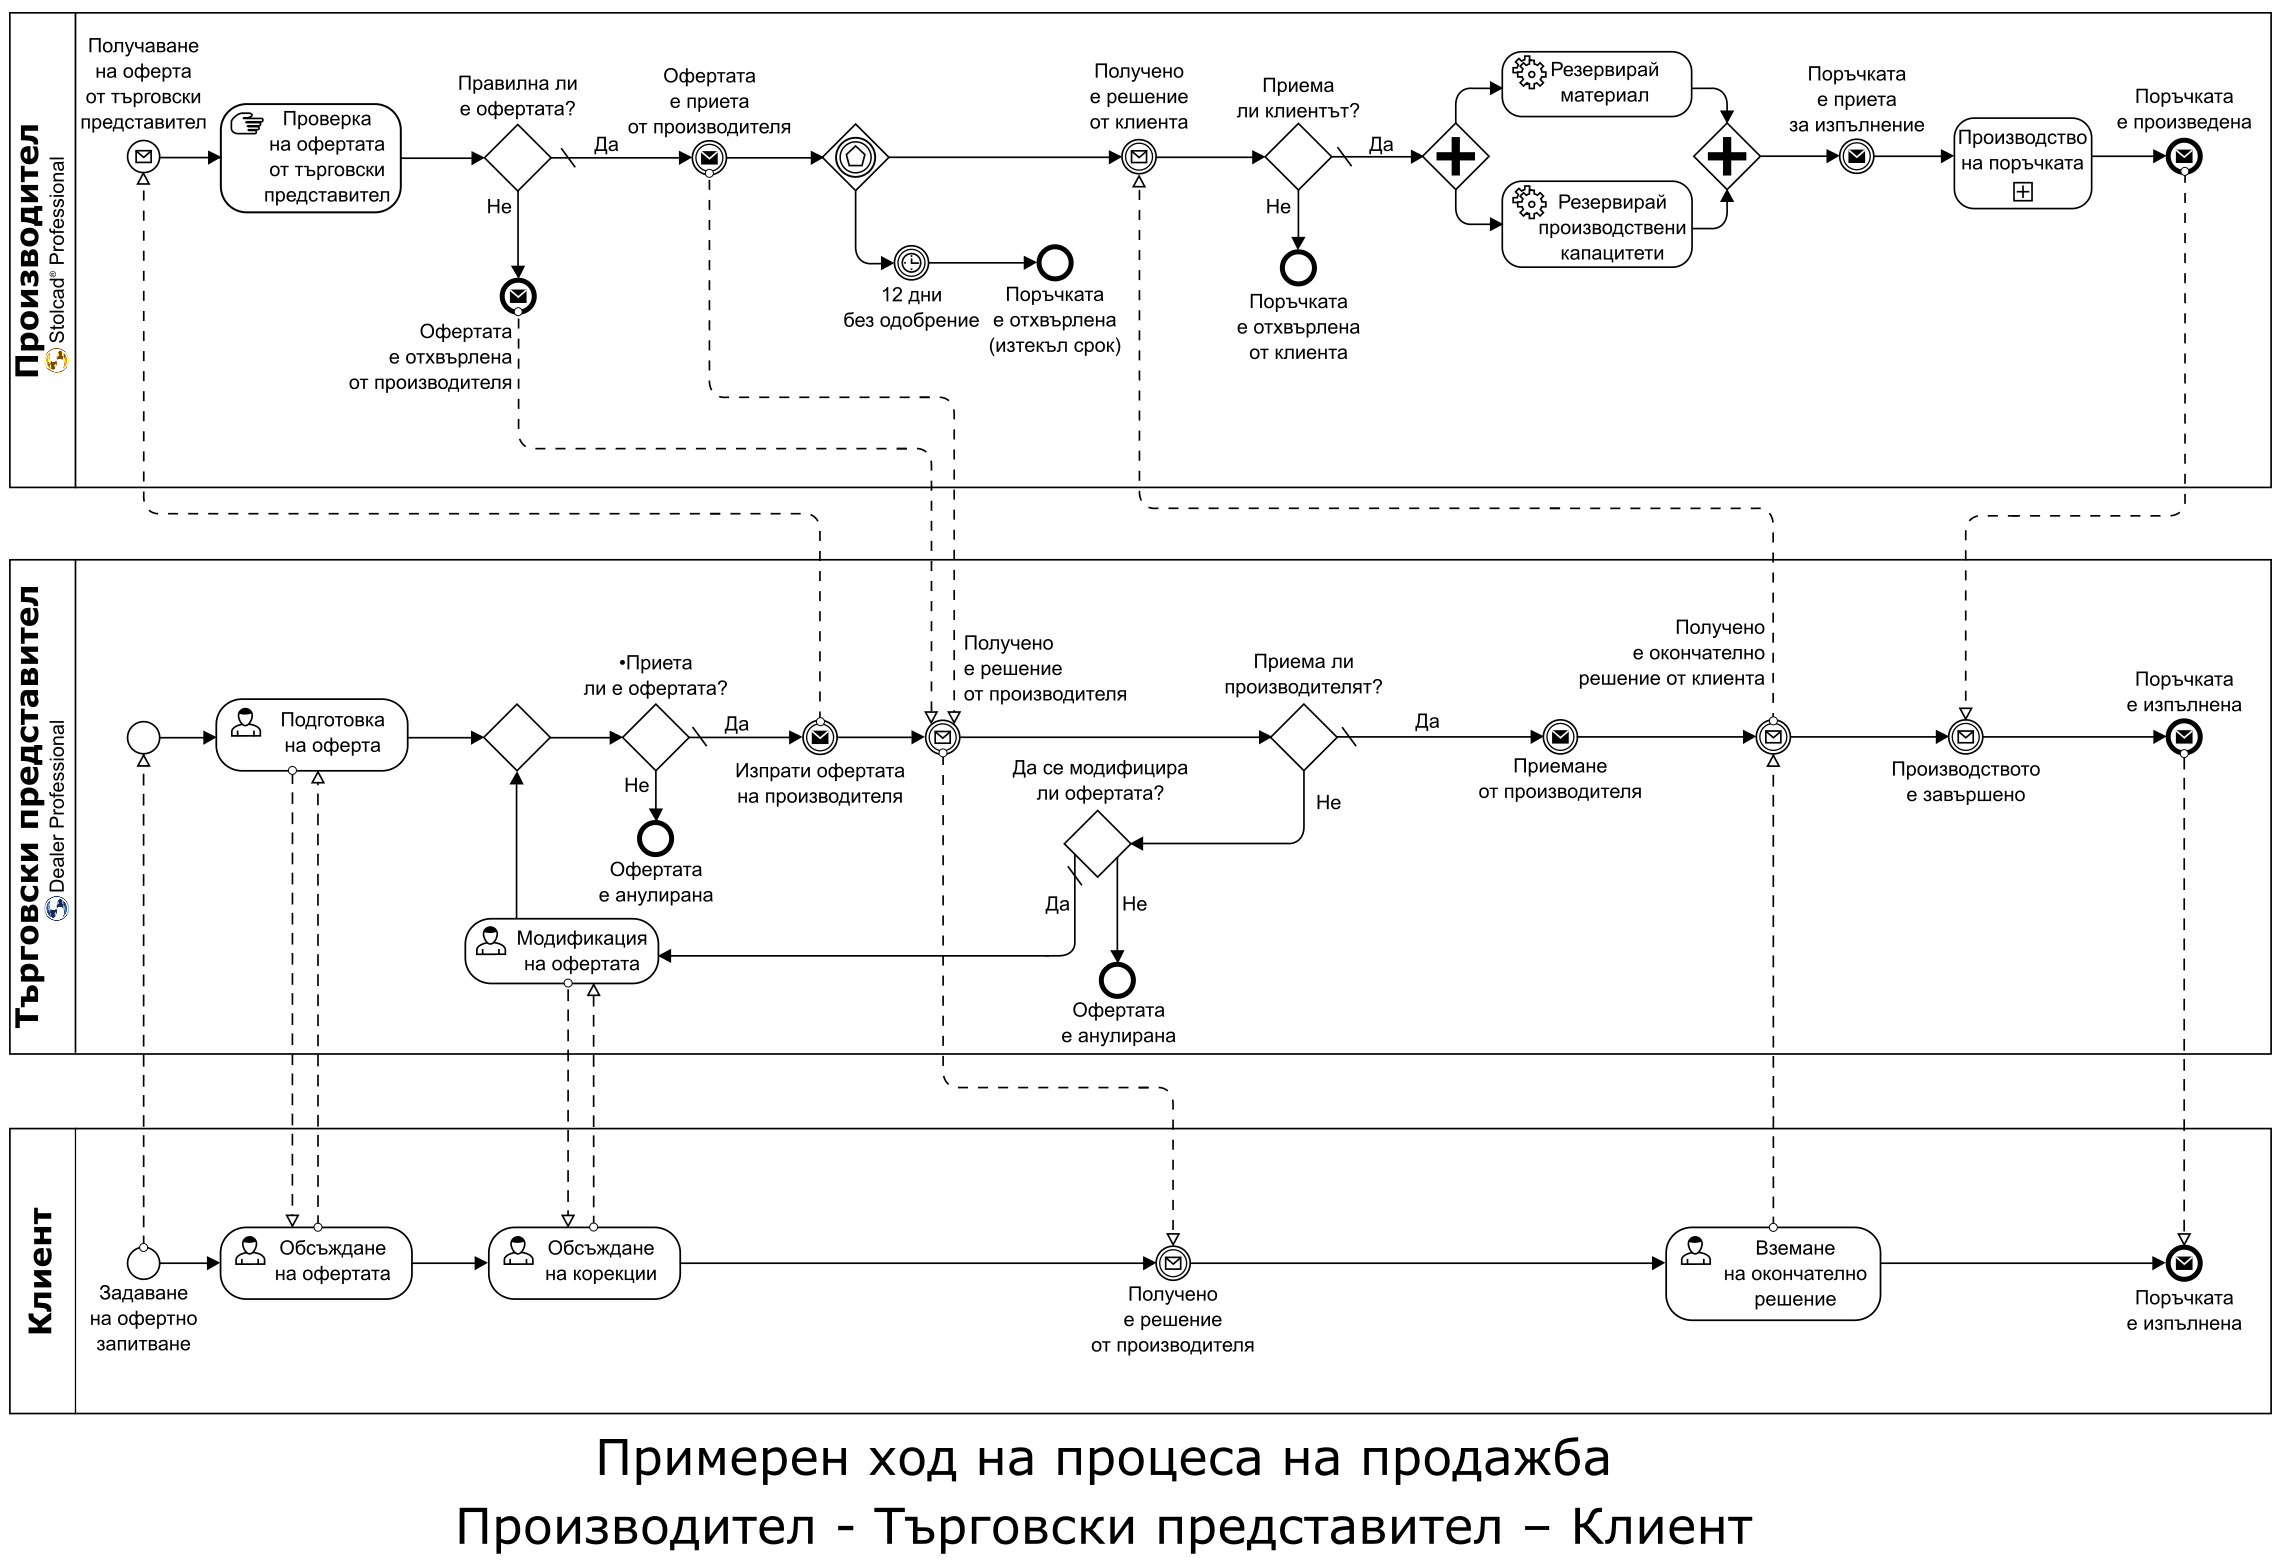 Примерна диаграма BPMN на процеса на продажба, възможна за внедряване в Stolcad Professional